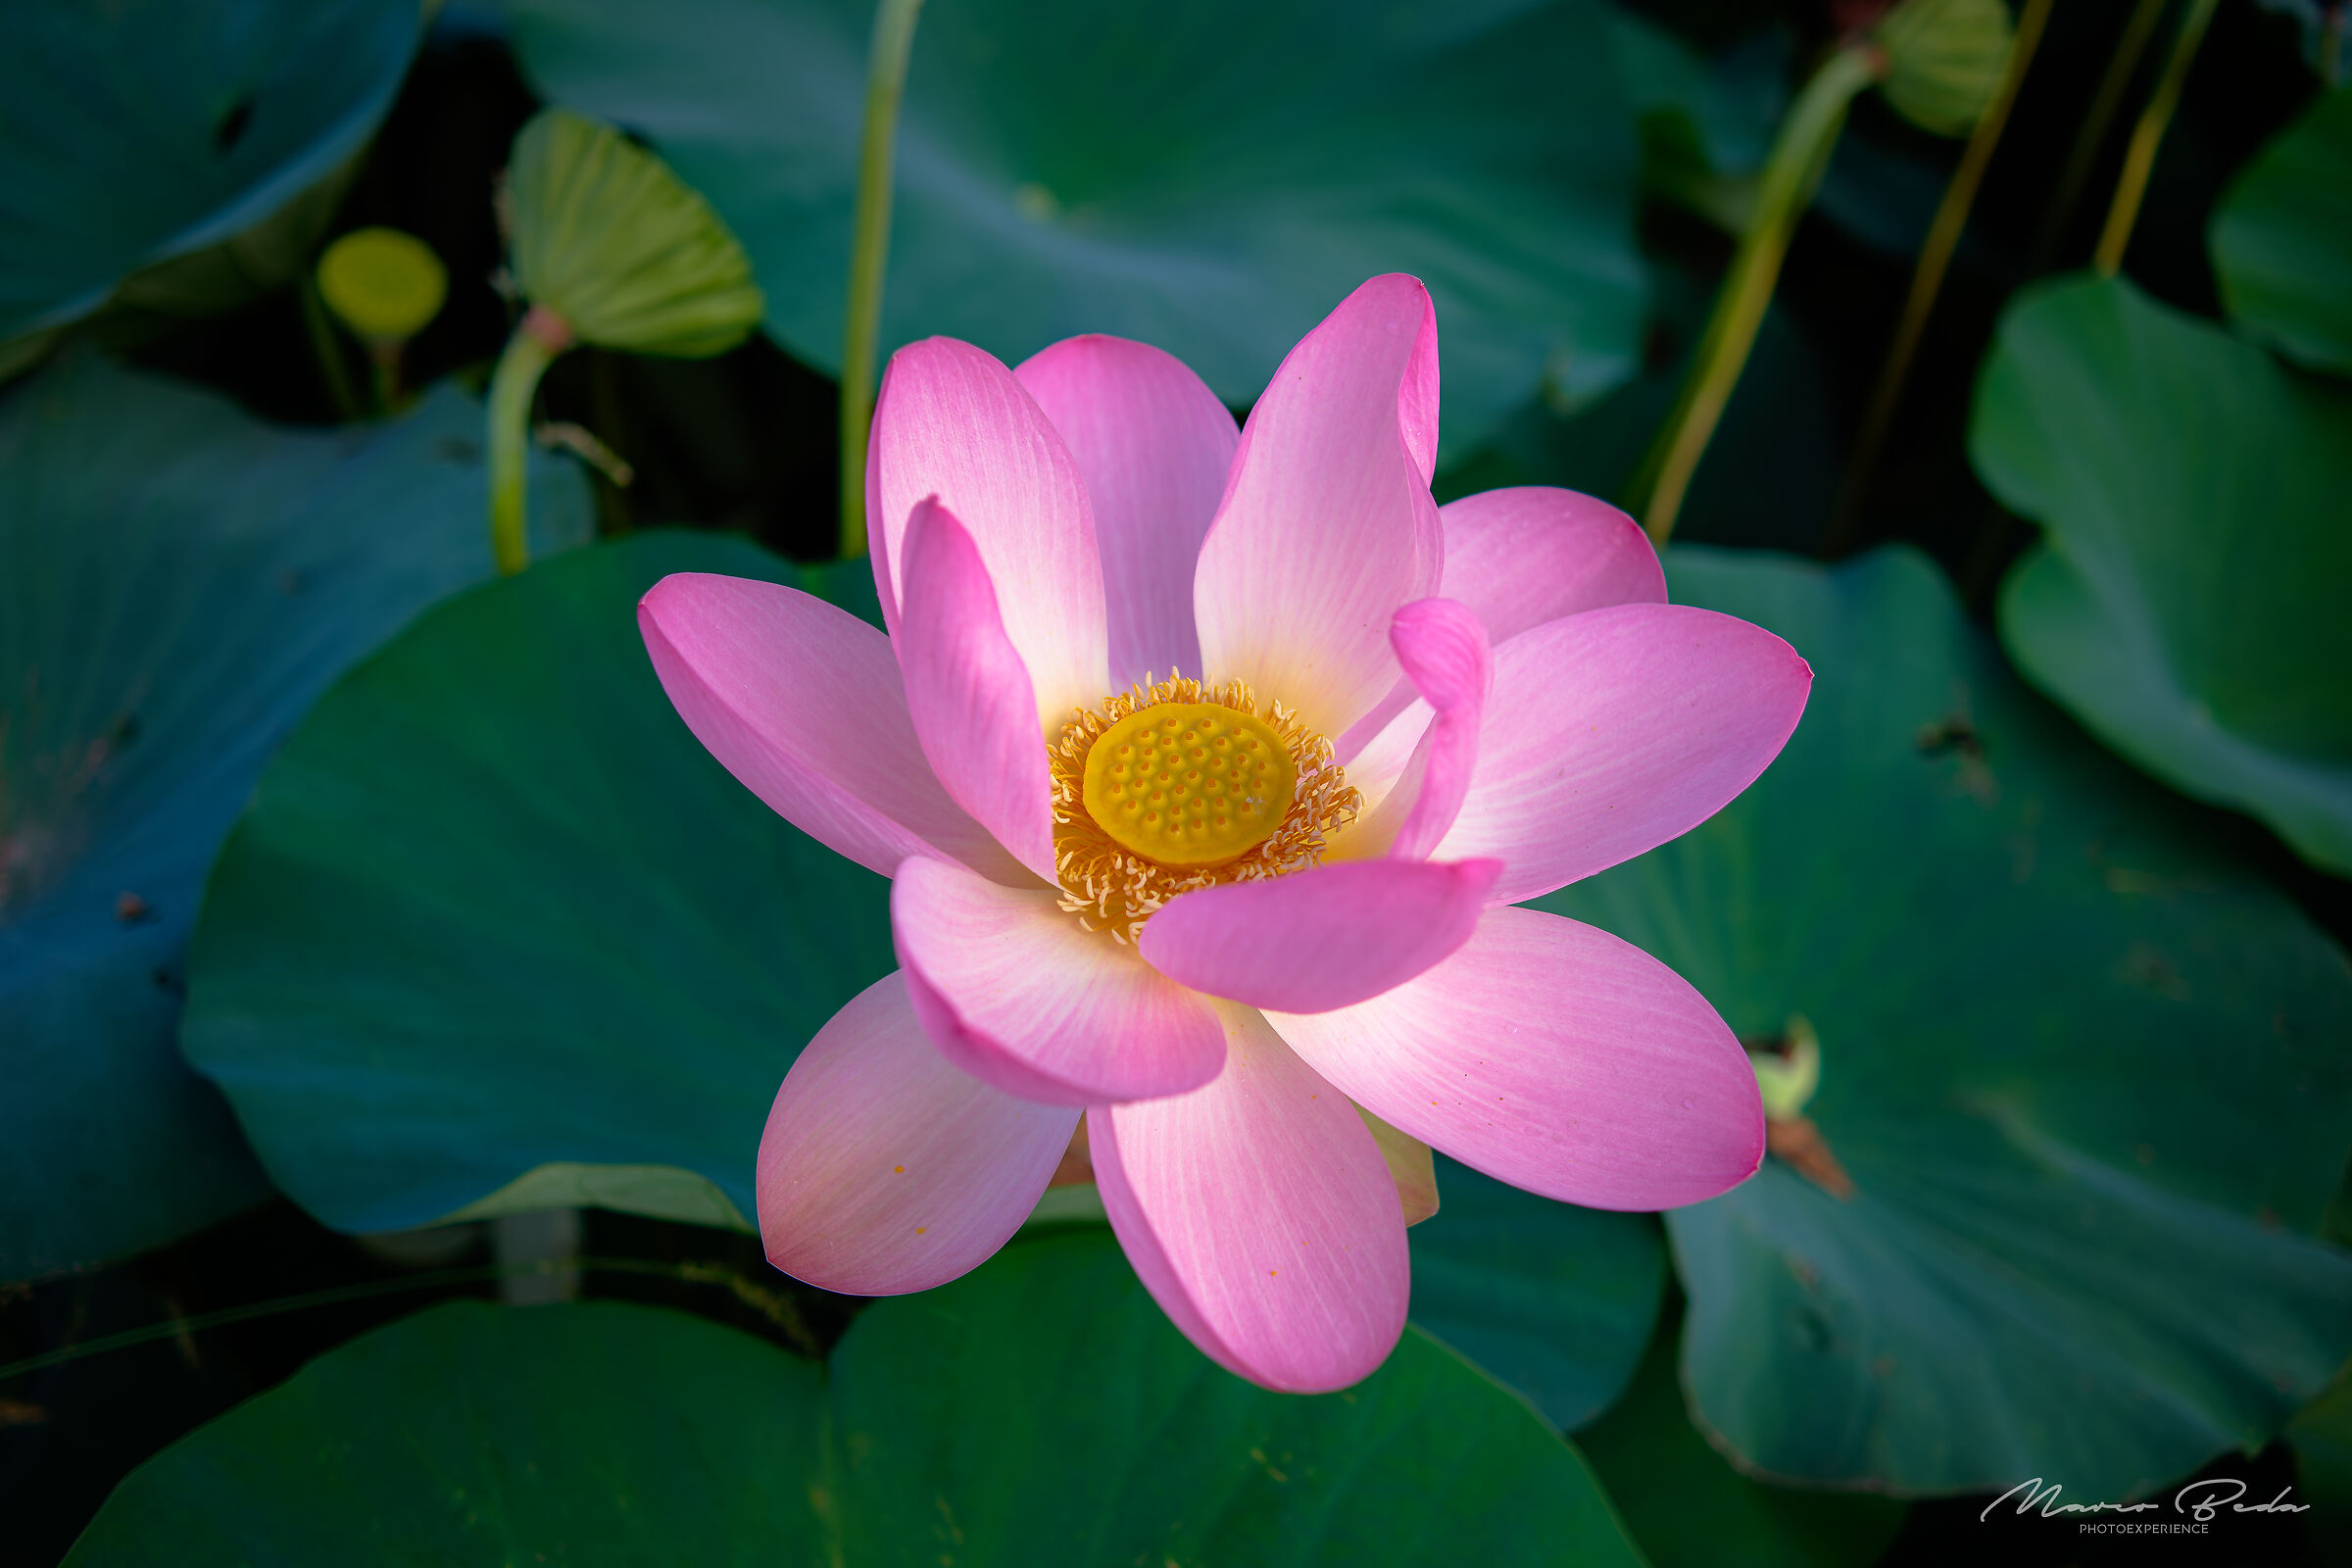 Lotus flower bloom...